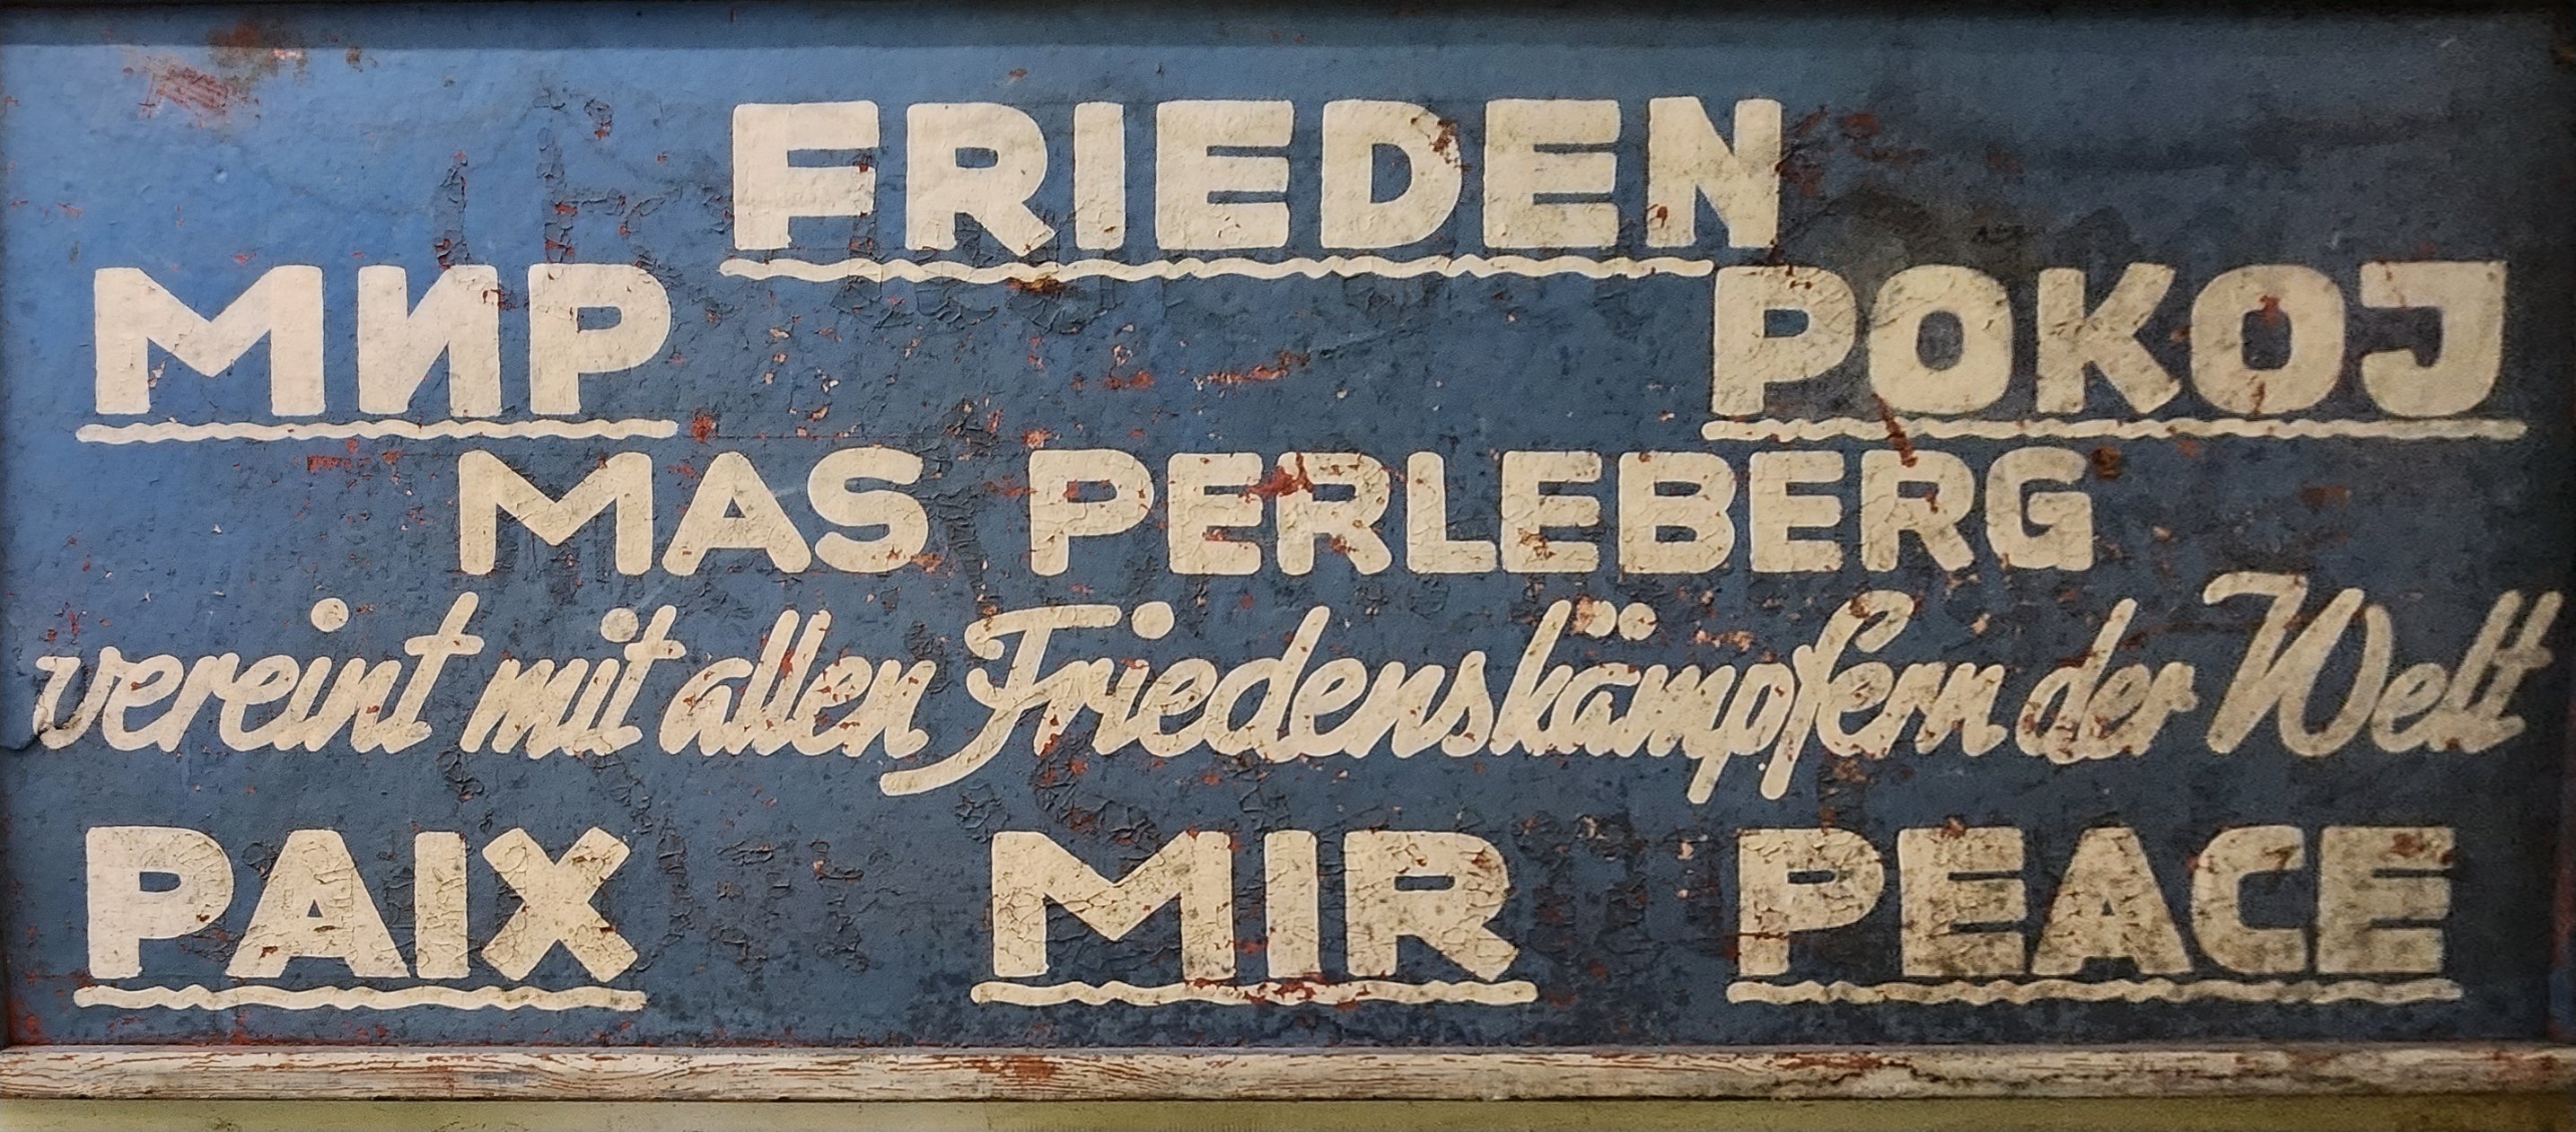 Schild der Maschinenaustauschstation (MAS) Perleberg mit Friedenslosung (DDR Geschichtsmuseum im Dokumentationszentrum Perleberg CC BY-SA)